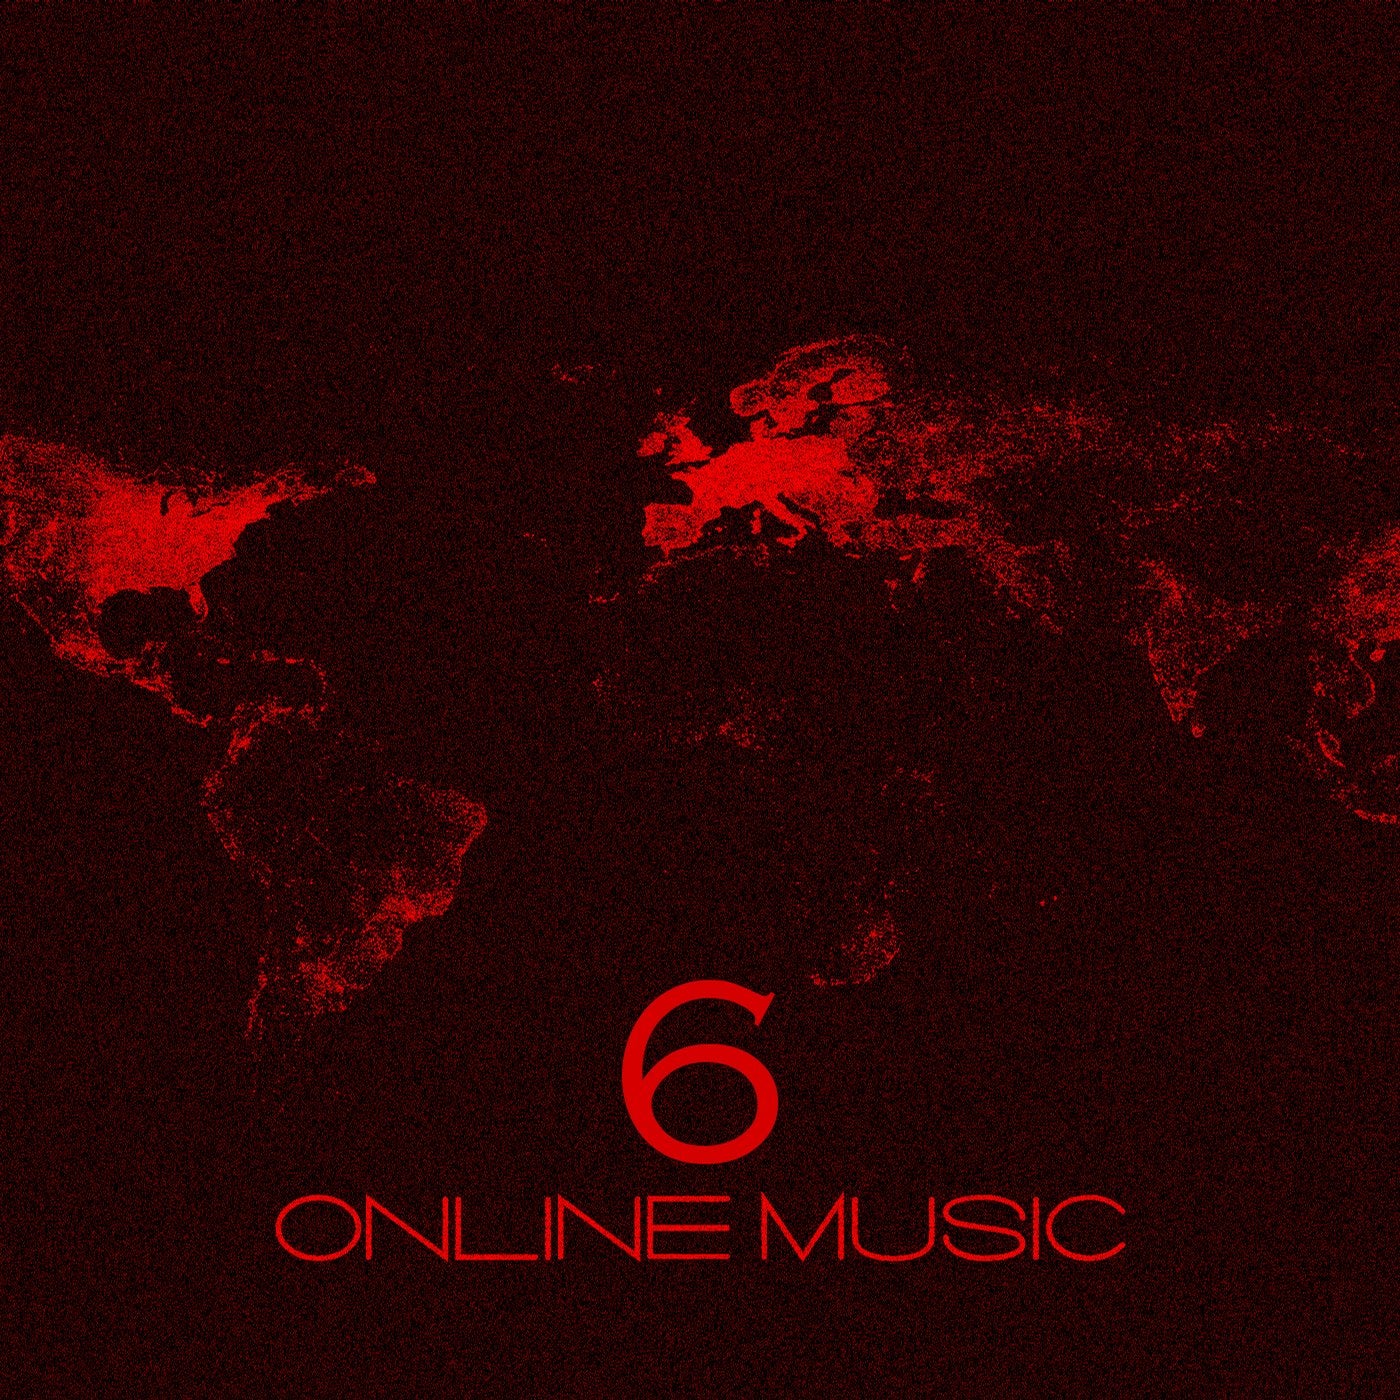 Online Music 6